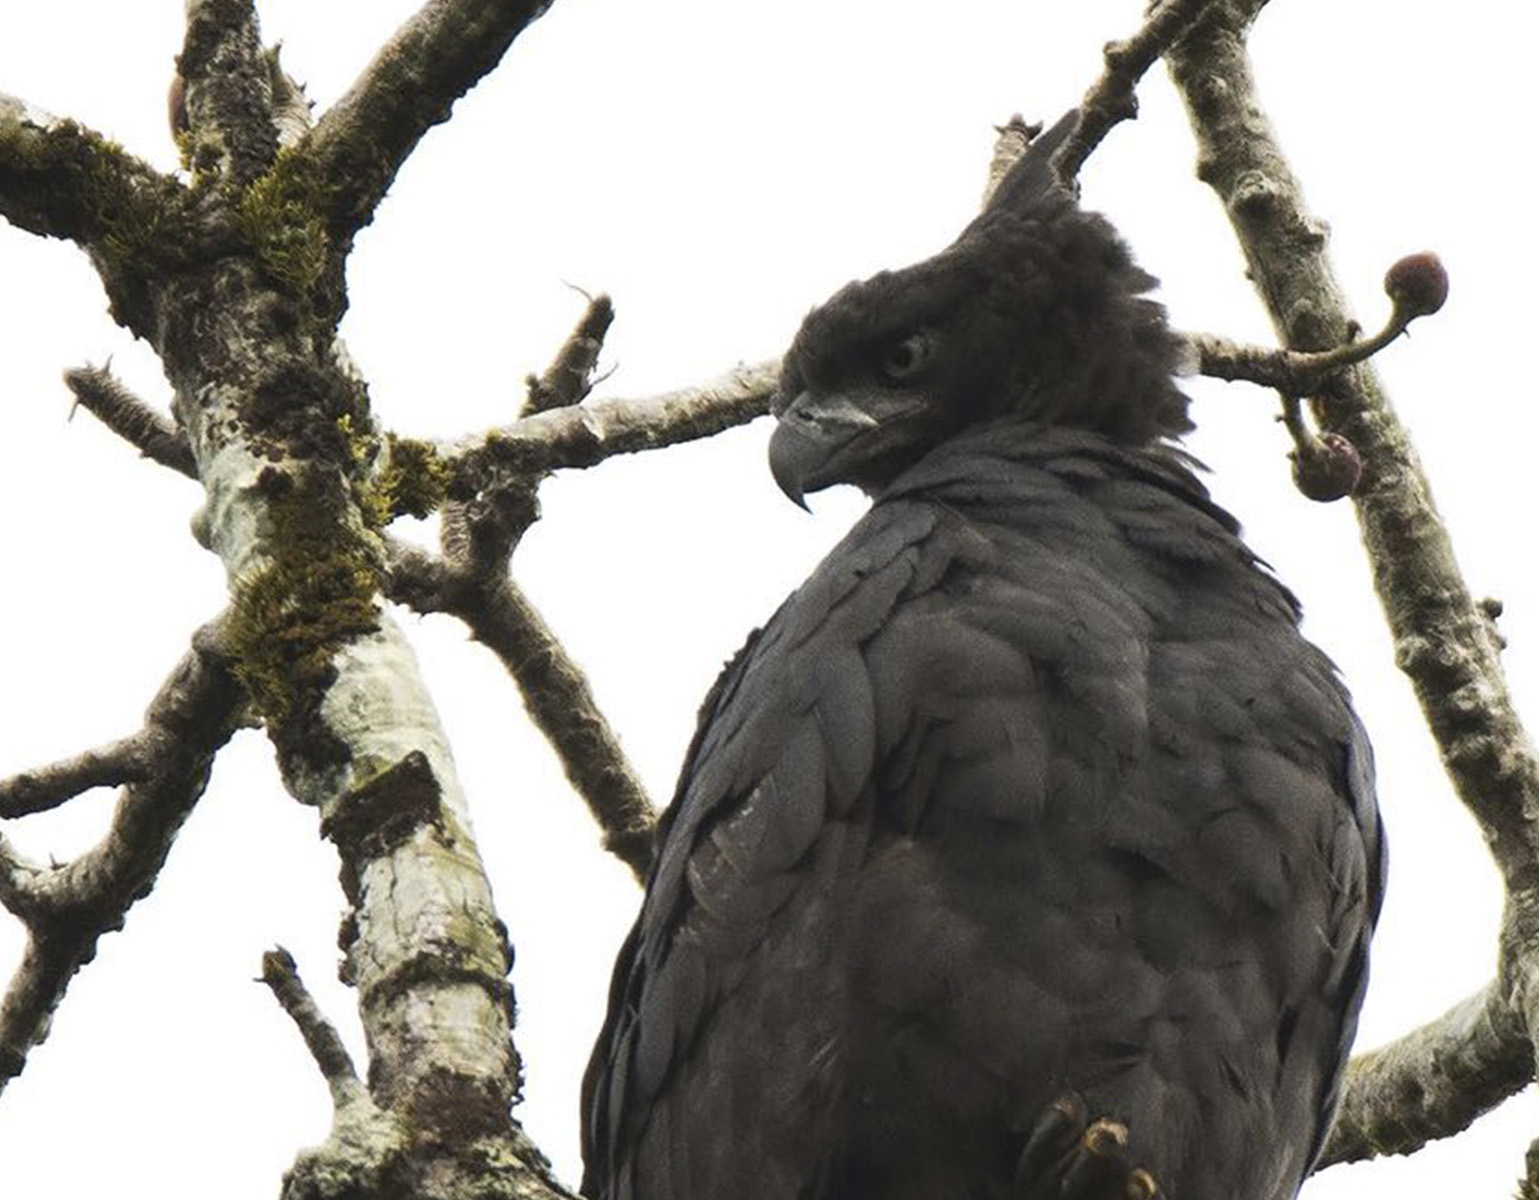 Crested Eagle in Panama